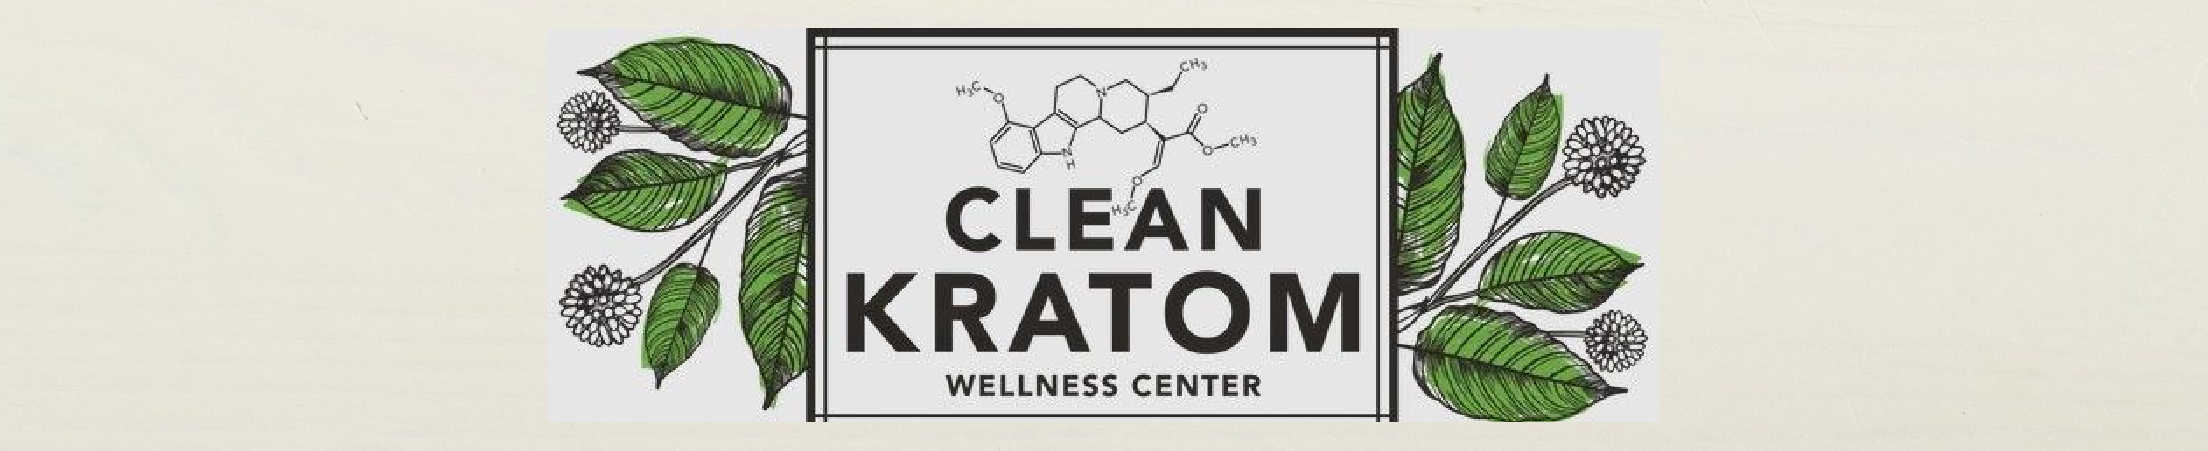 image of clean kratom